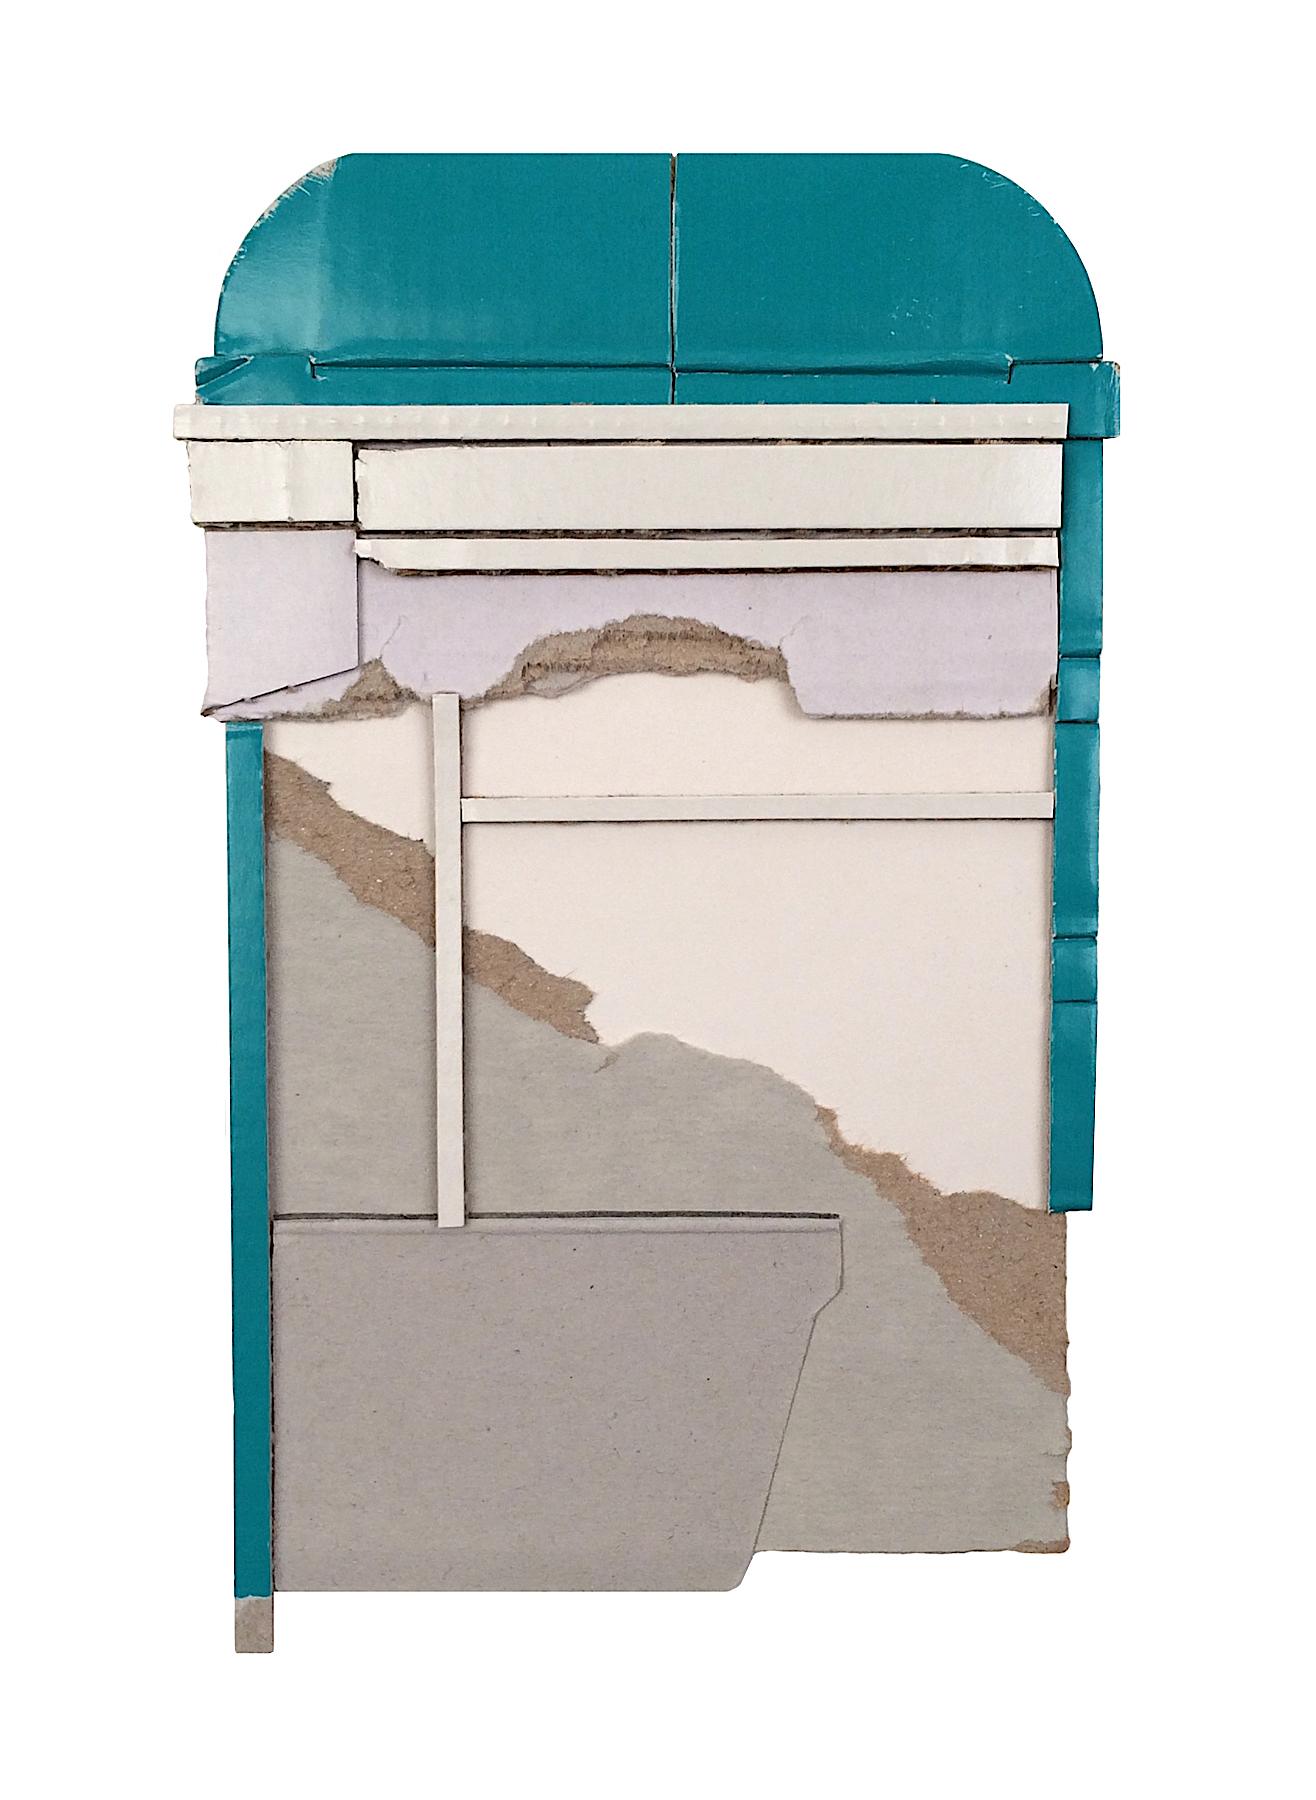 Ryan Sarah Murphy, Shift, 2015, cardboard collage, 4.75 x 7.75 in 2